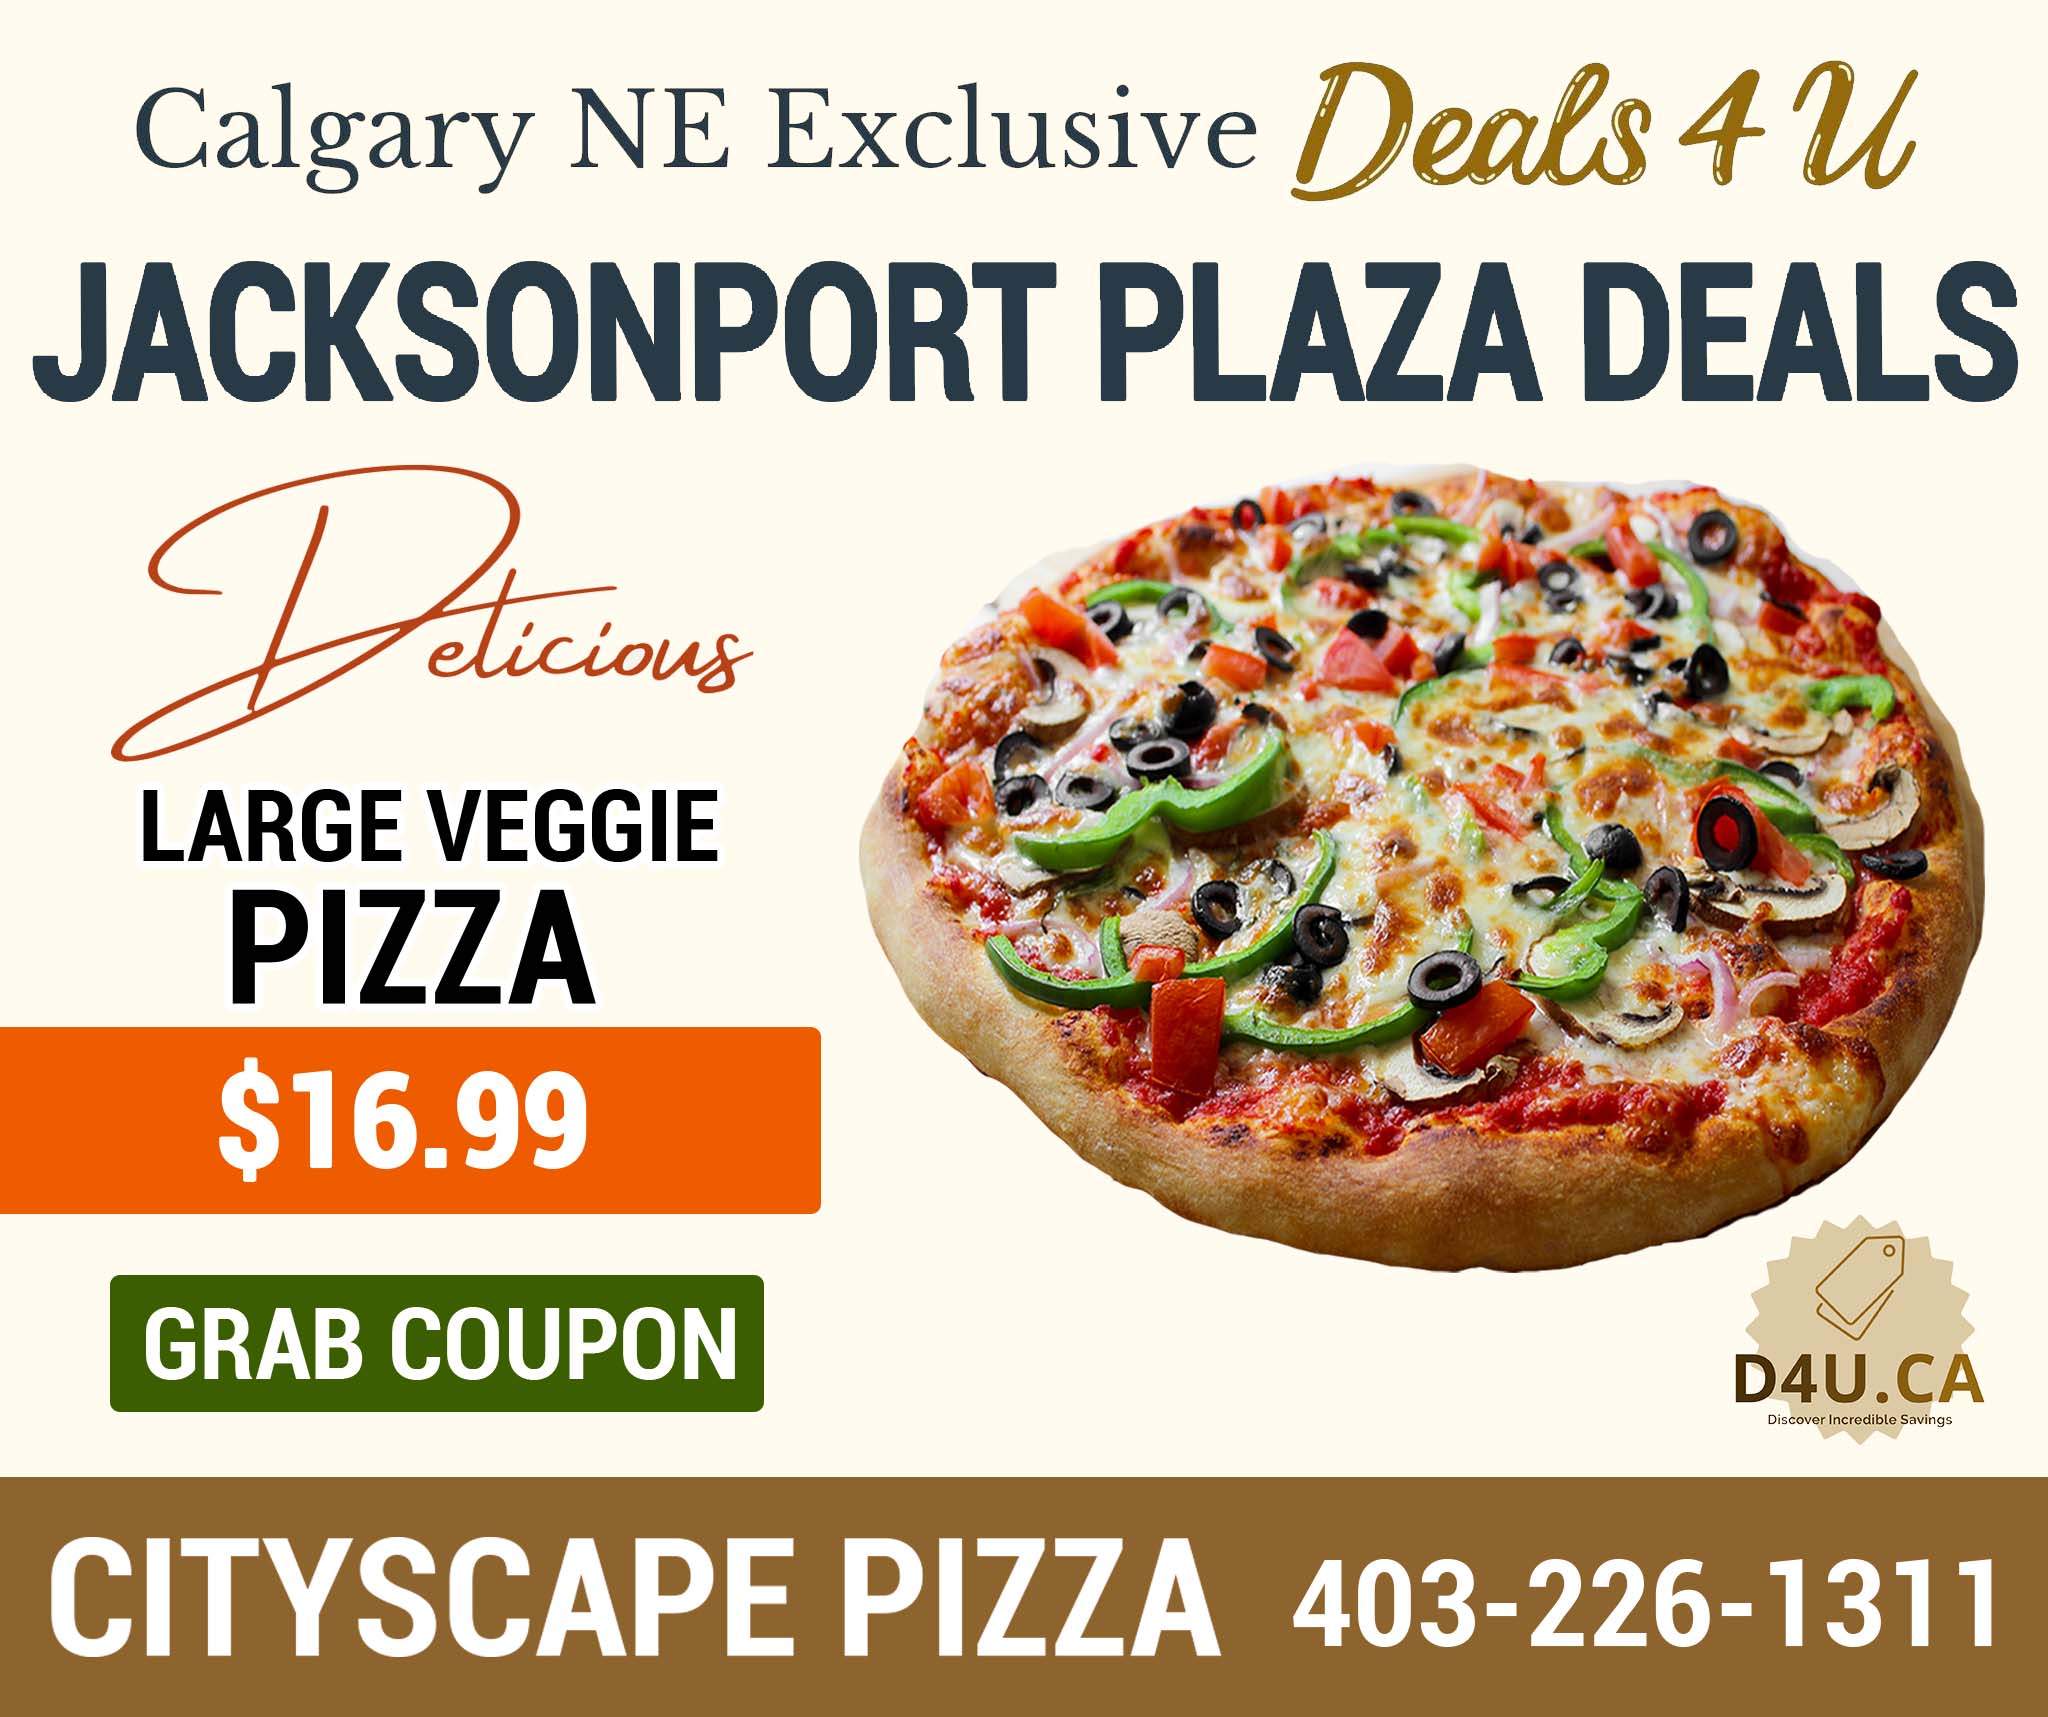 Cityscape Large Veggie Pizza Deals at D4U.ca